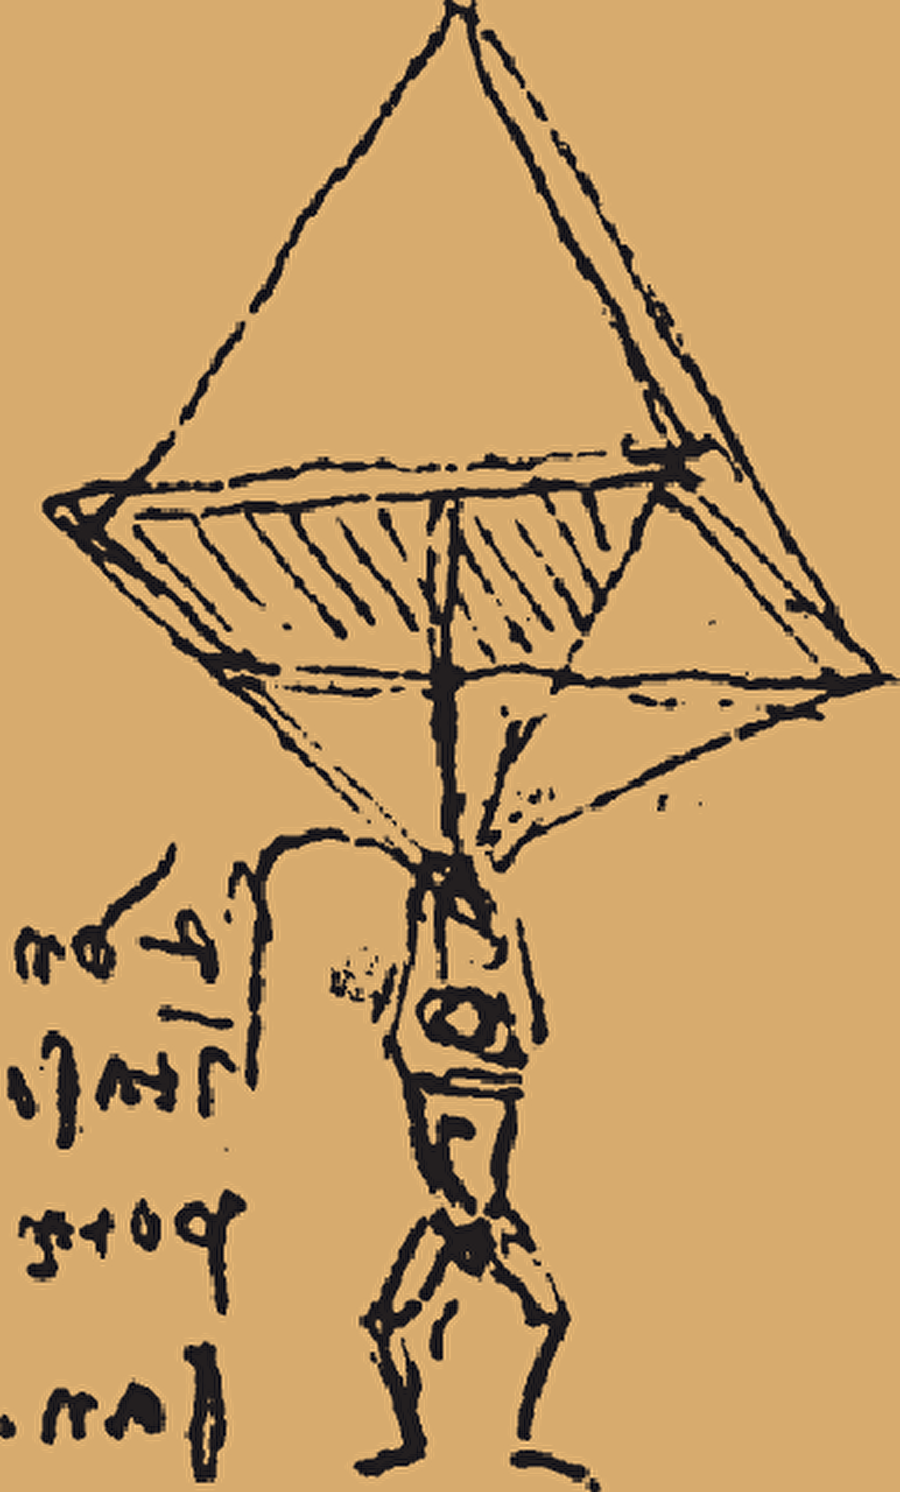 Paraşüt 
Leonardo Da Vinci insanın uçması fikri ile tasarladığı piramit şeklindeki paraşüt. Not tuttuğu defterlerinden birinde bulunan bu tasarım yüksekten atlayan bir kişinin incinmeden yere inmesini sağlayan bir alettir. Günümüzdeki paraşütlerin atası niteliğinde olmasının yanı sıra tam olarak tasarladığı modelin aynısı denenmiş ve zor da olsa başarılı bir iniş gerçekleşmiştir. 